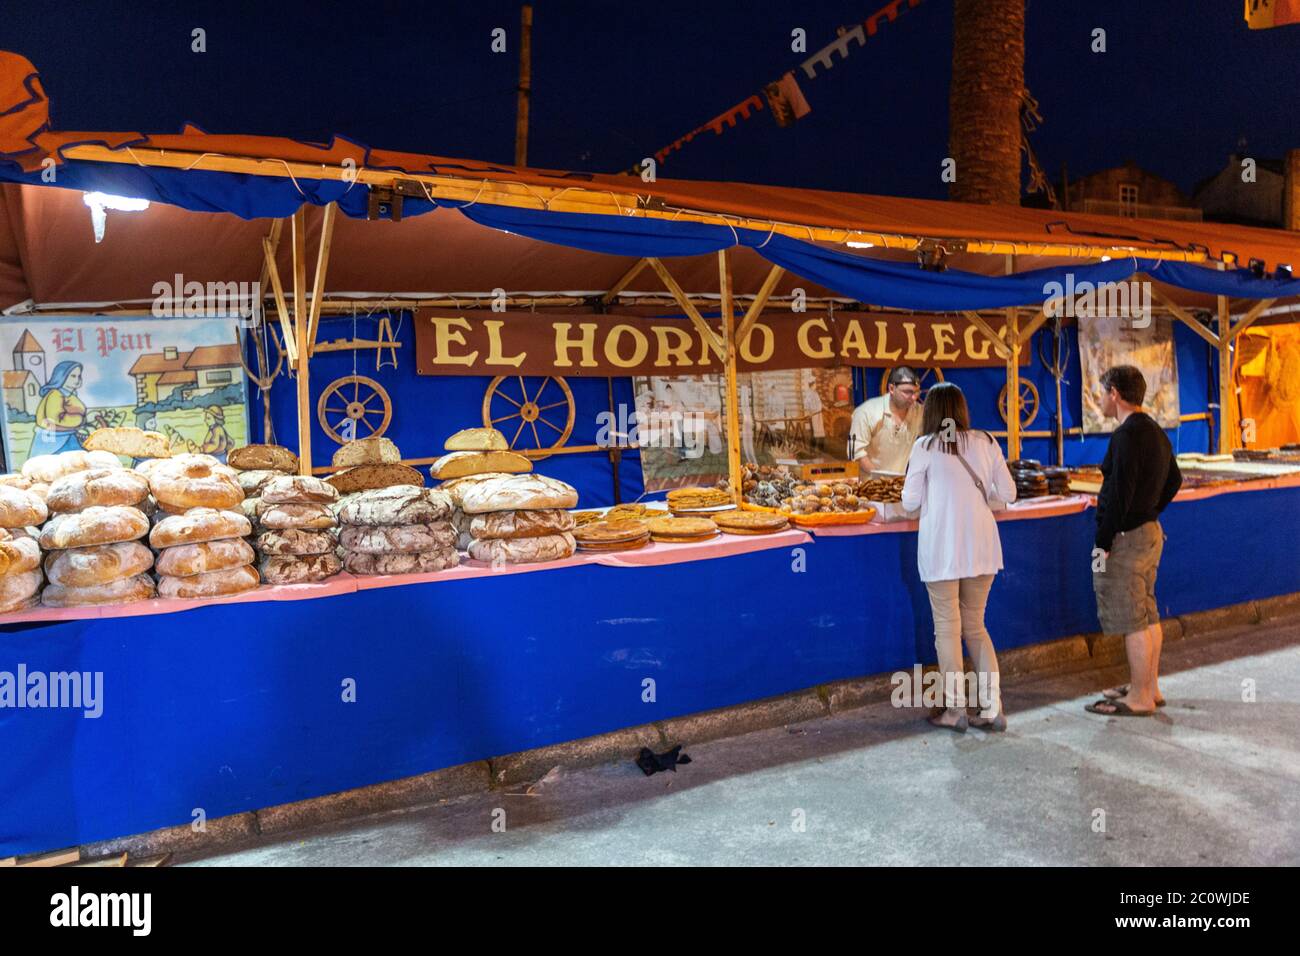 Gallego pain stalle dans le marché médiéval de corcubion, UNE province de la Corogne, Galice, Espagne Banque D'Images